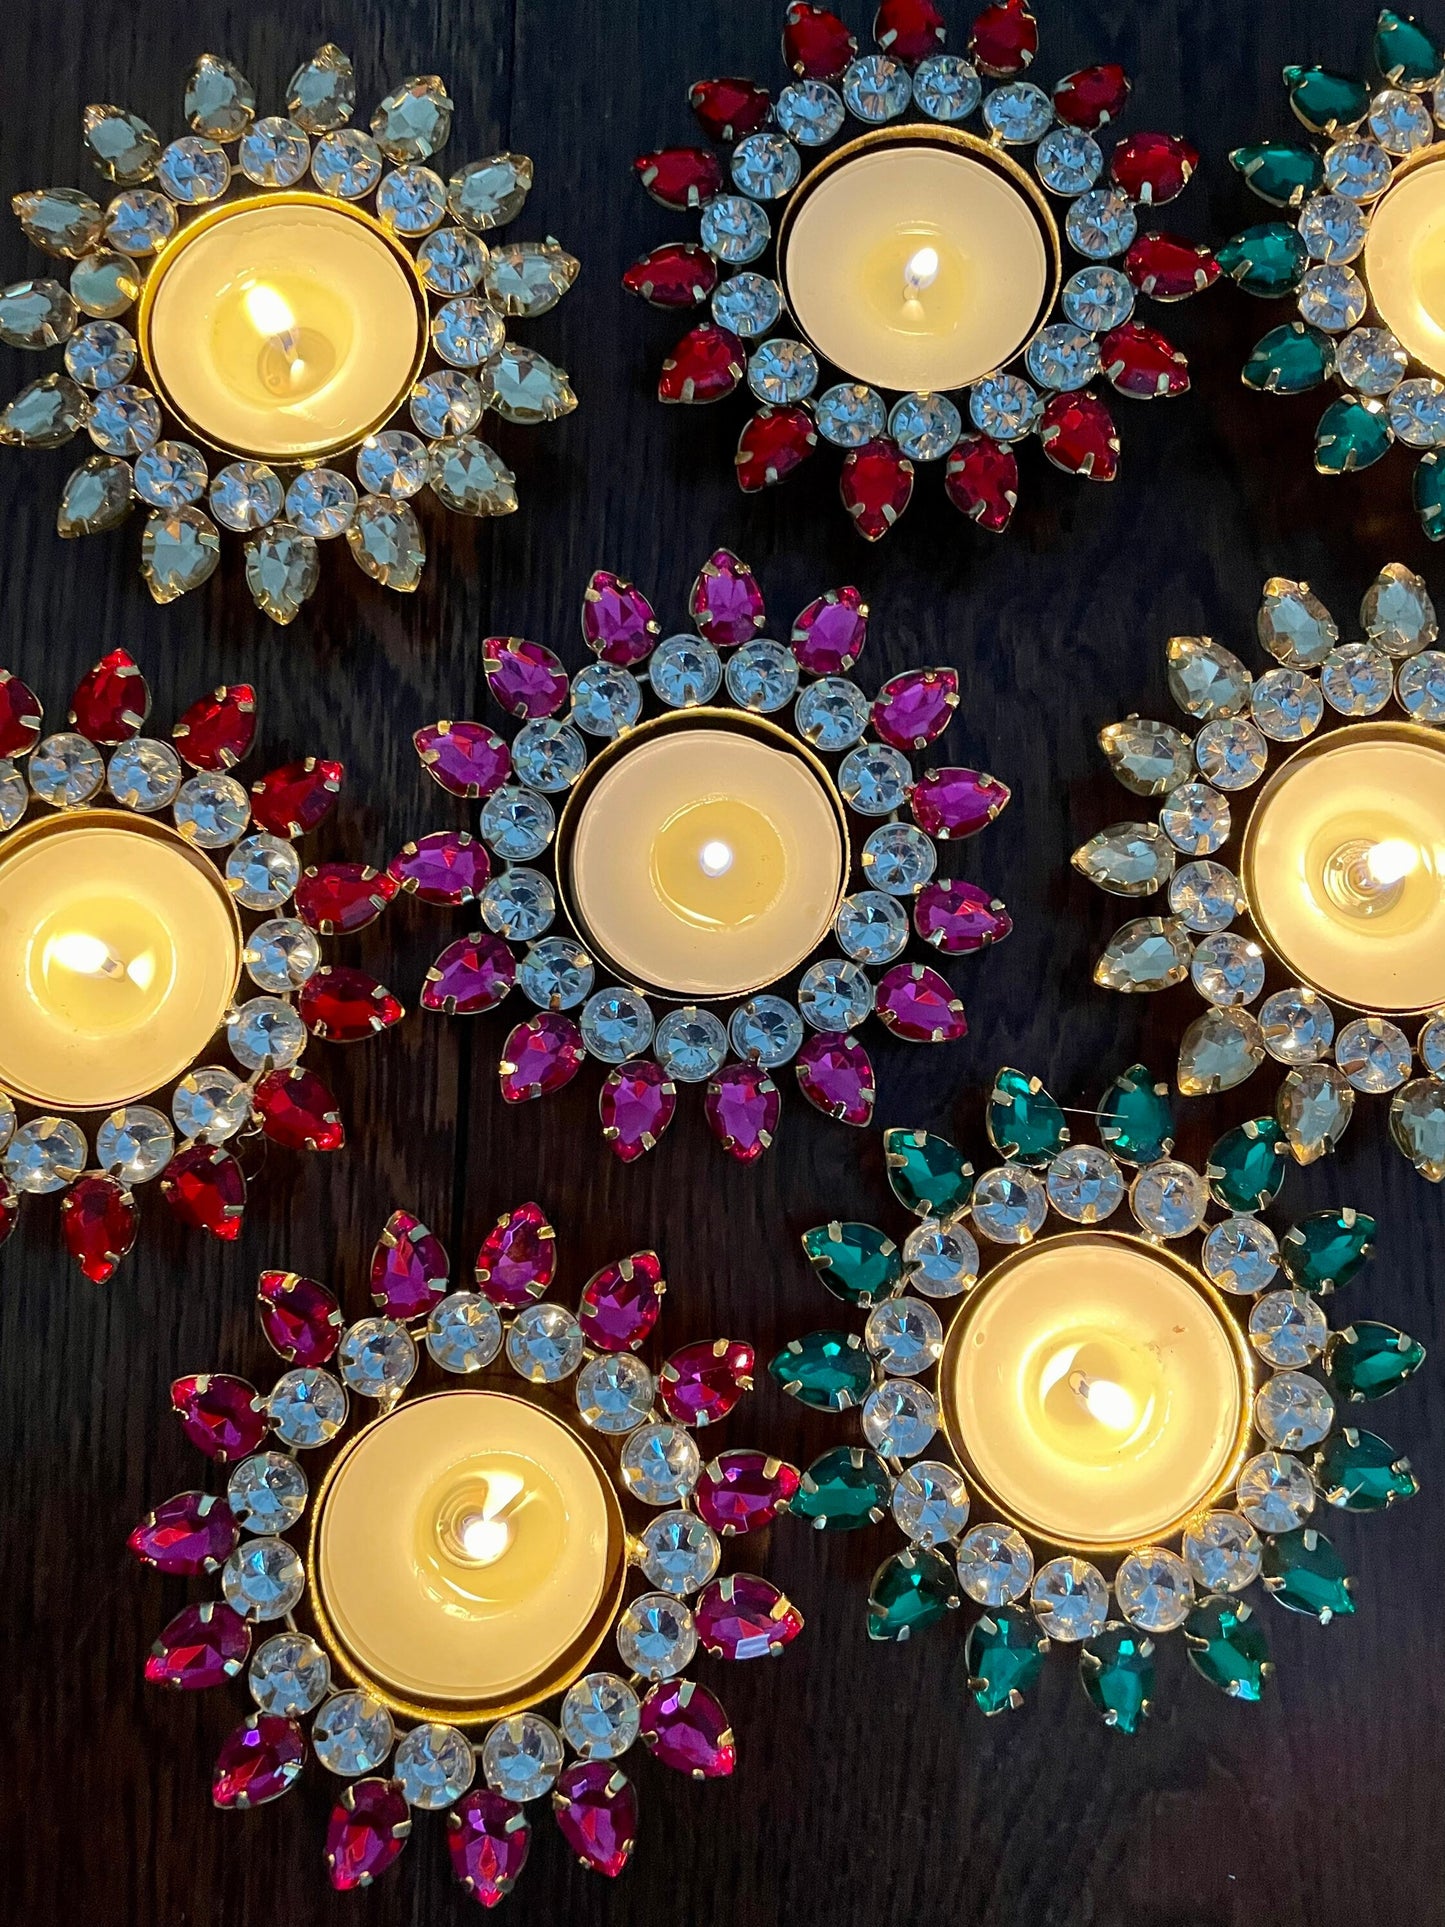 12 Diwali Navratri Set of Tea light Candle Holders, Metal Diyas,Perfect for Gifting, Home, Mehendi Thaal, Dholki, Decor